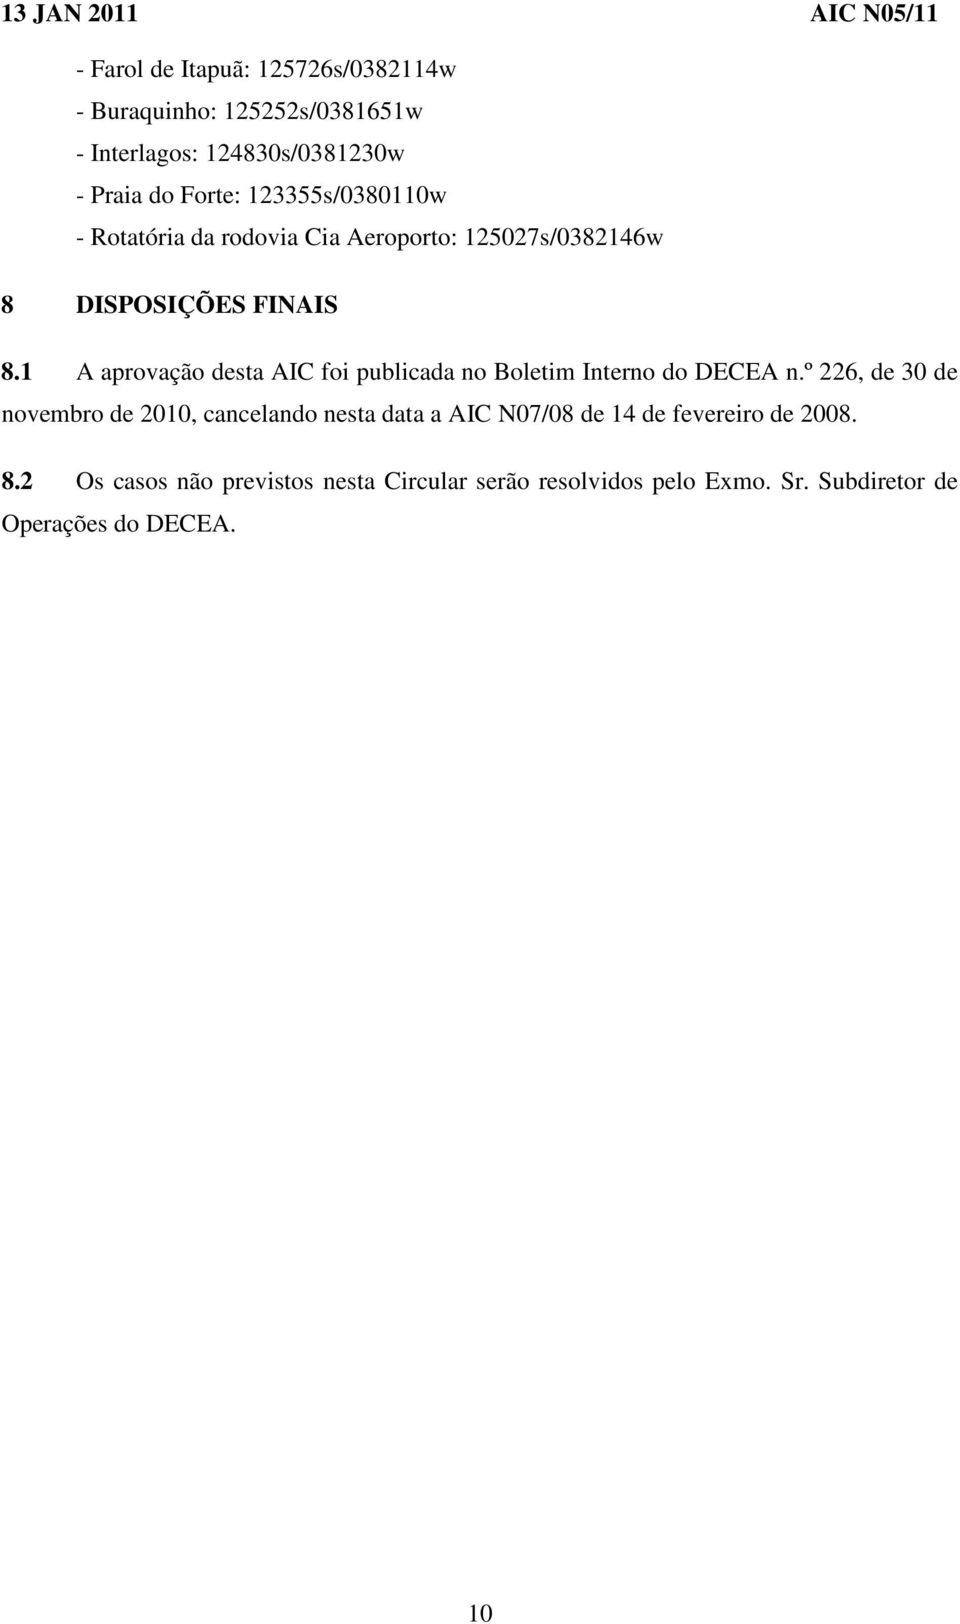 1 A aprovação desta AIC foi publicada no Boletim Interno do DECEA n.